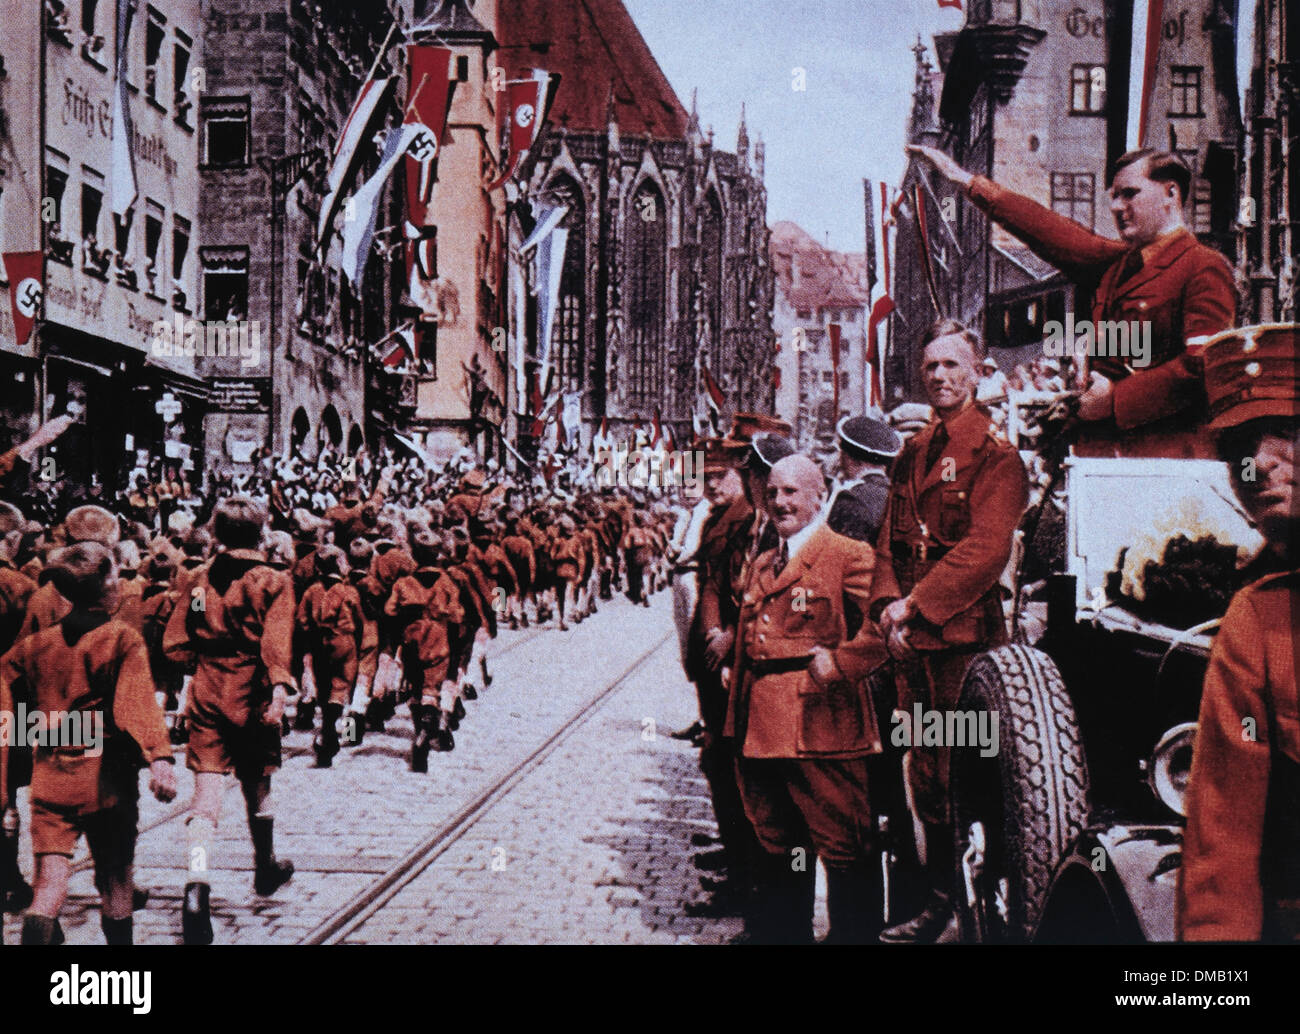 Les membres d'Adolf Hitler Jurgund avant mars leur chef, Baldur von Shirach, au cours de rallye, Nuremberg, Allemagne, 1933 Banque D'Images